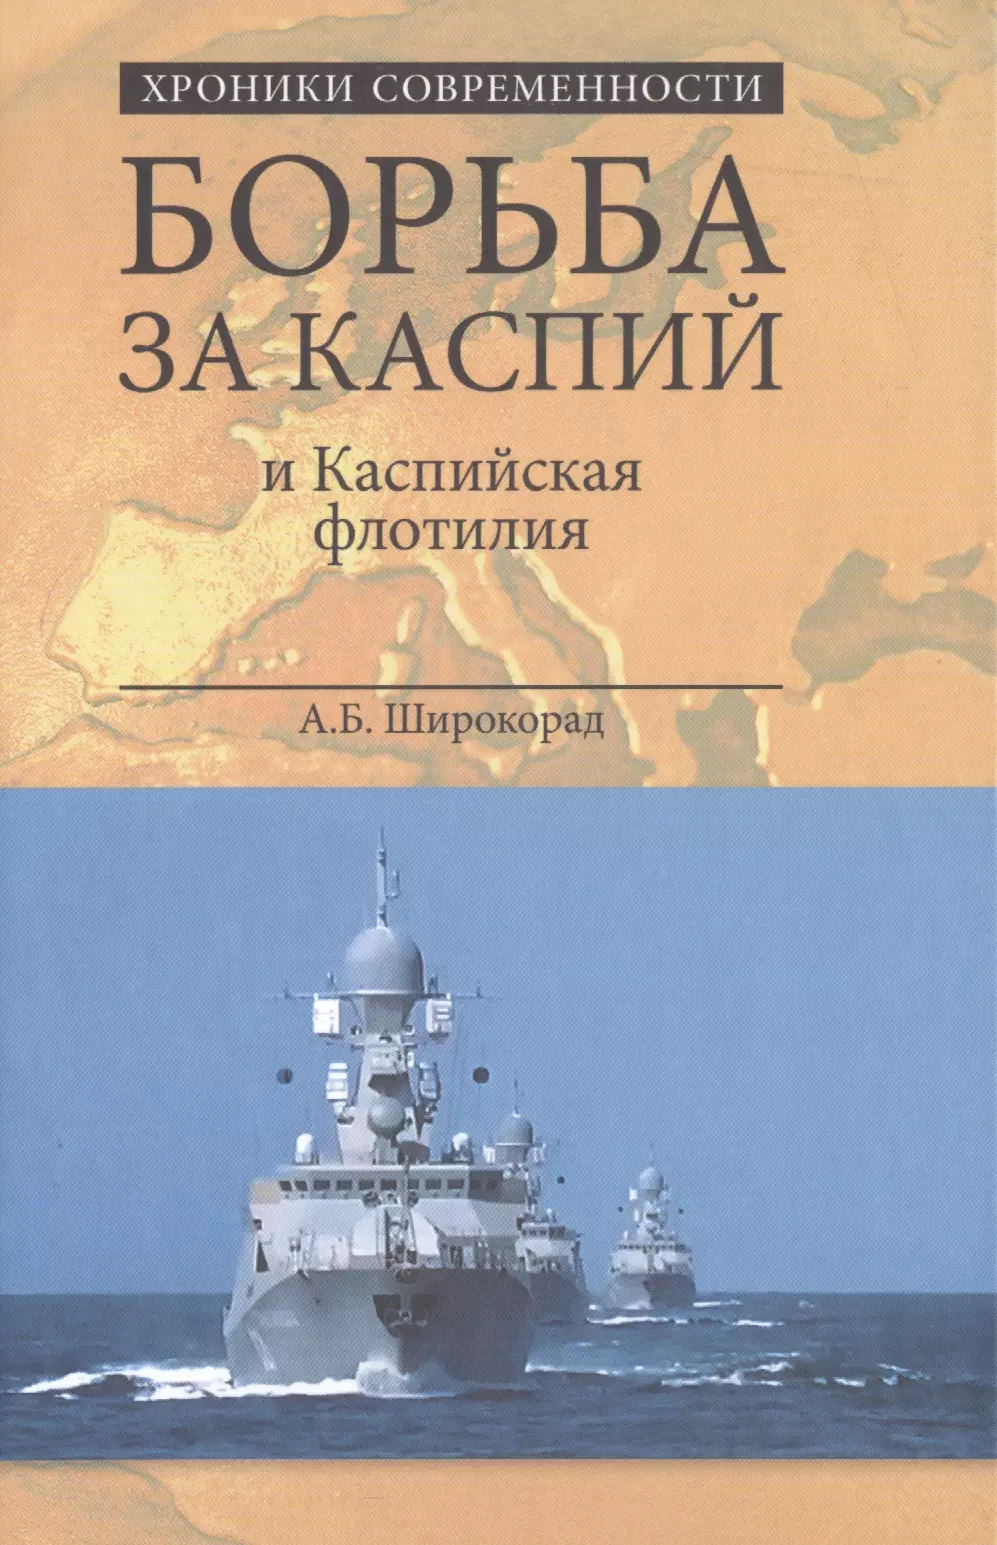 Широкорад Александр Борисович - Борьба за Каспий и Каспийская флотилия